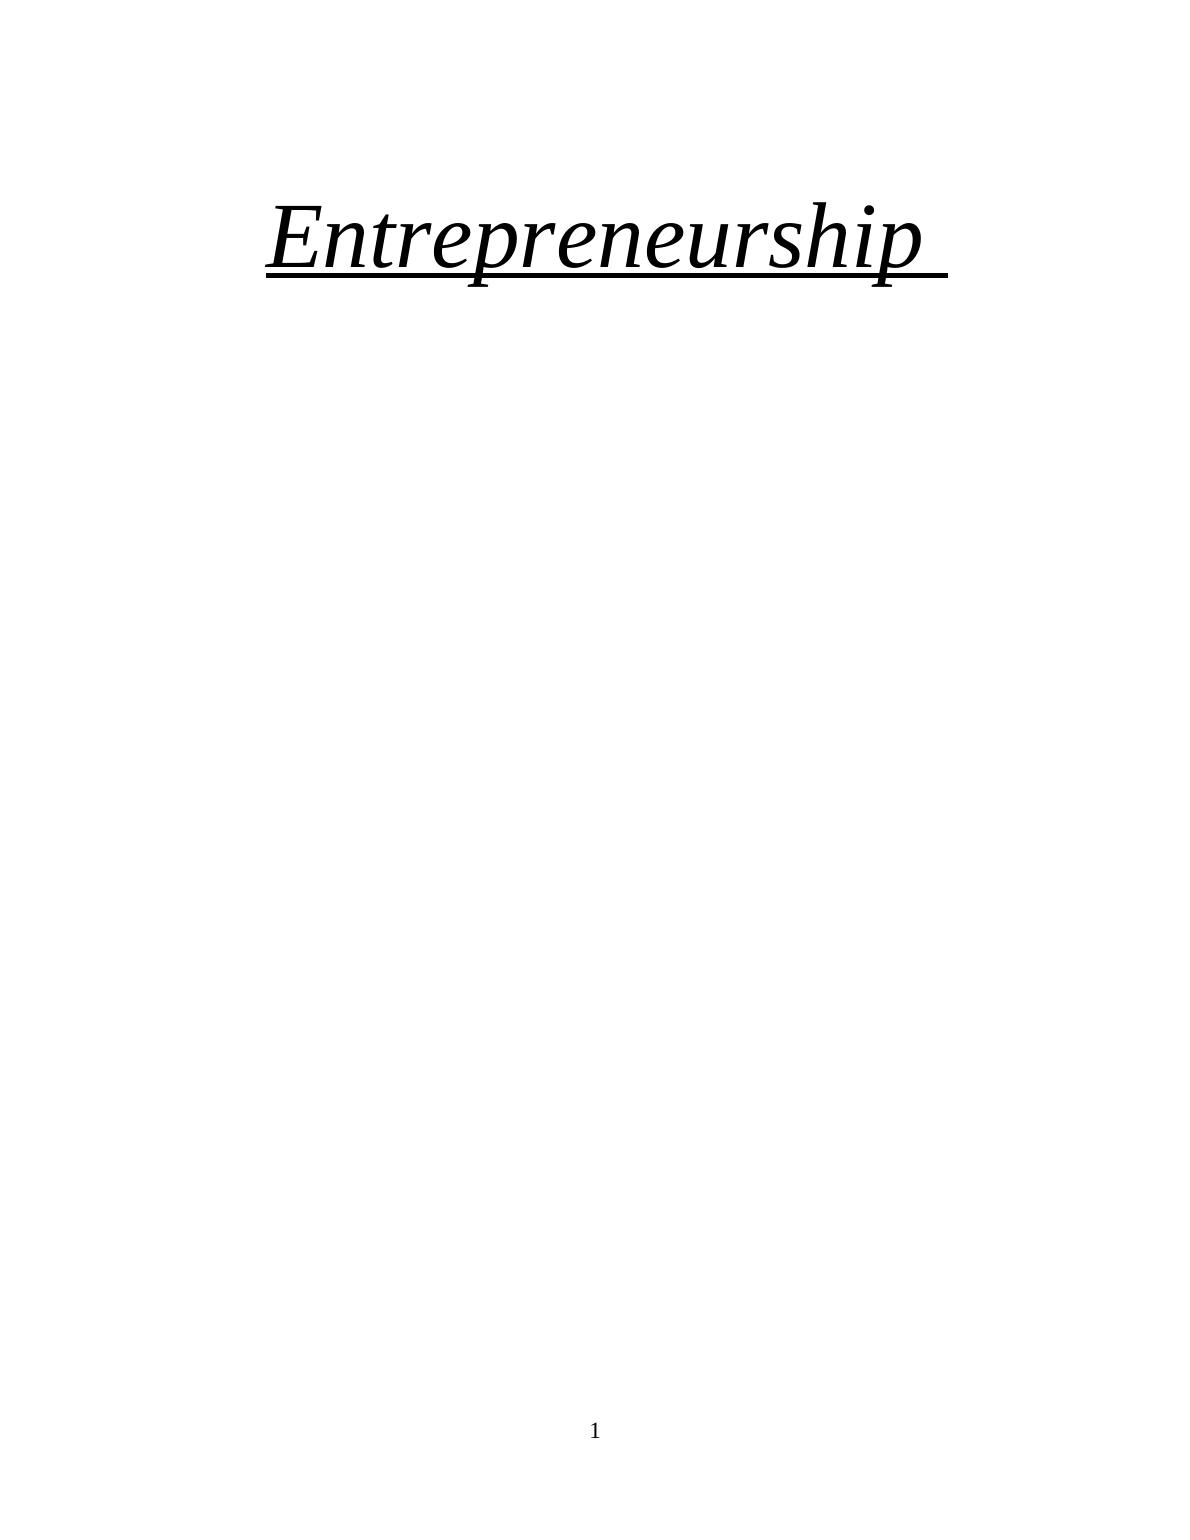 Entrepreneurship in Fast Food Restaurant_1